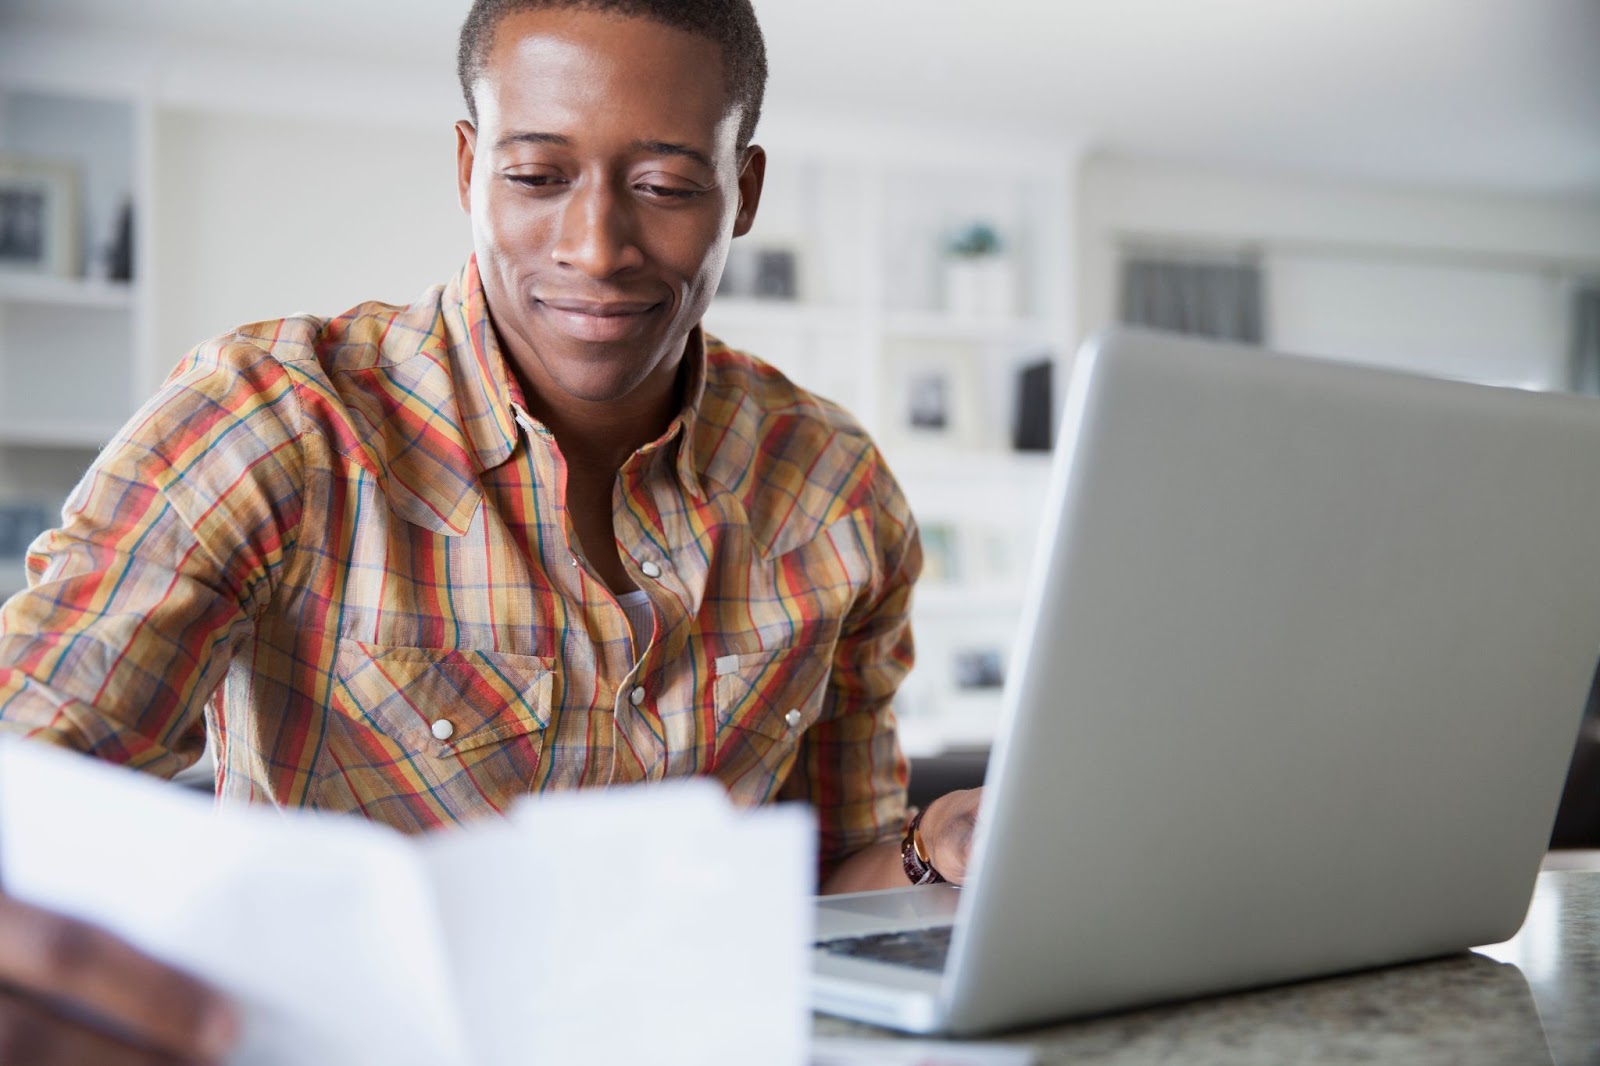 Imagem de um homem negro, de cabelos curtos e vestindo uma camisa xadrez. Ele sorri enquanto analisa um papel em sua mão direita, enquanto a esquerda está apoiada em um notebook cinza.